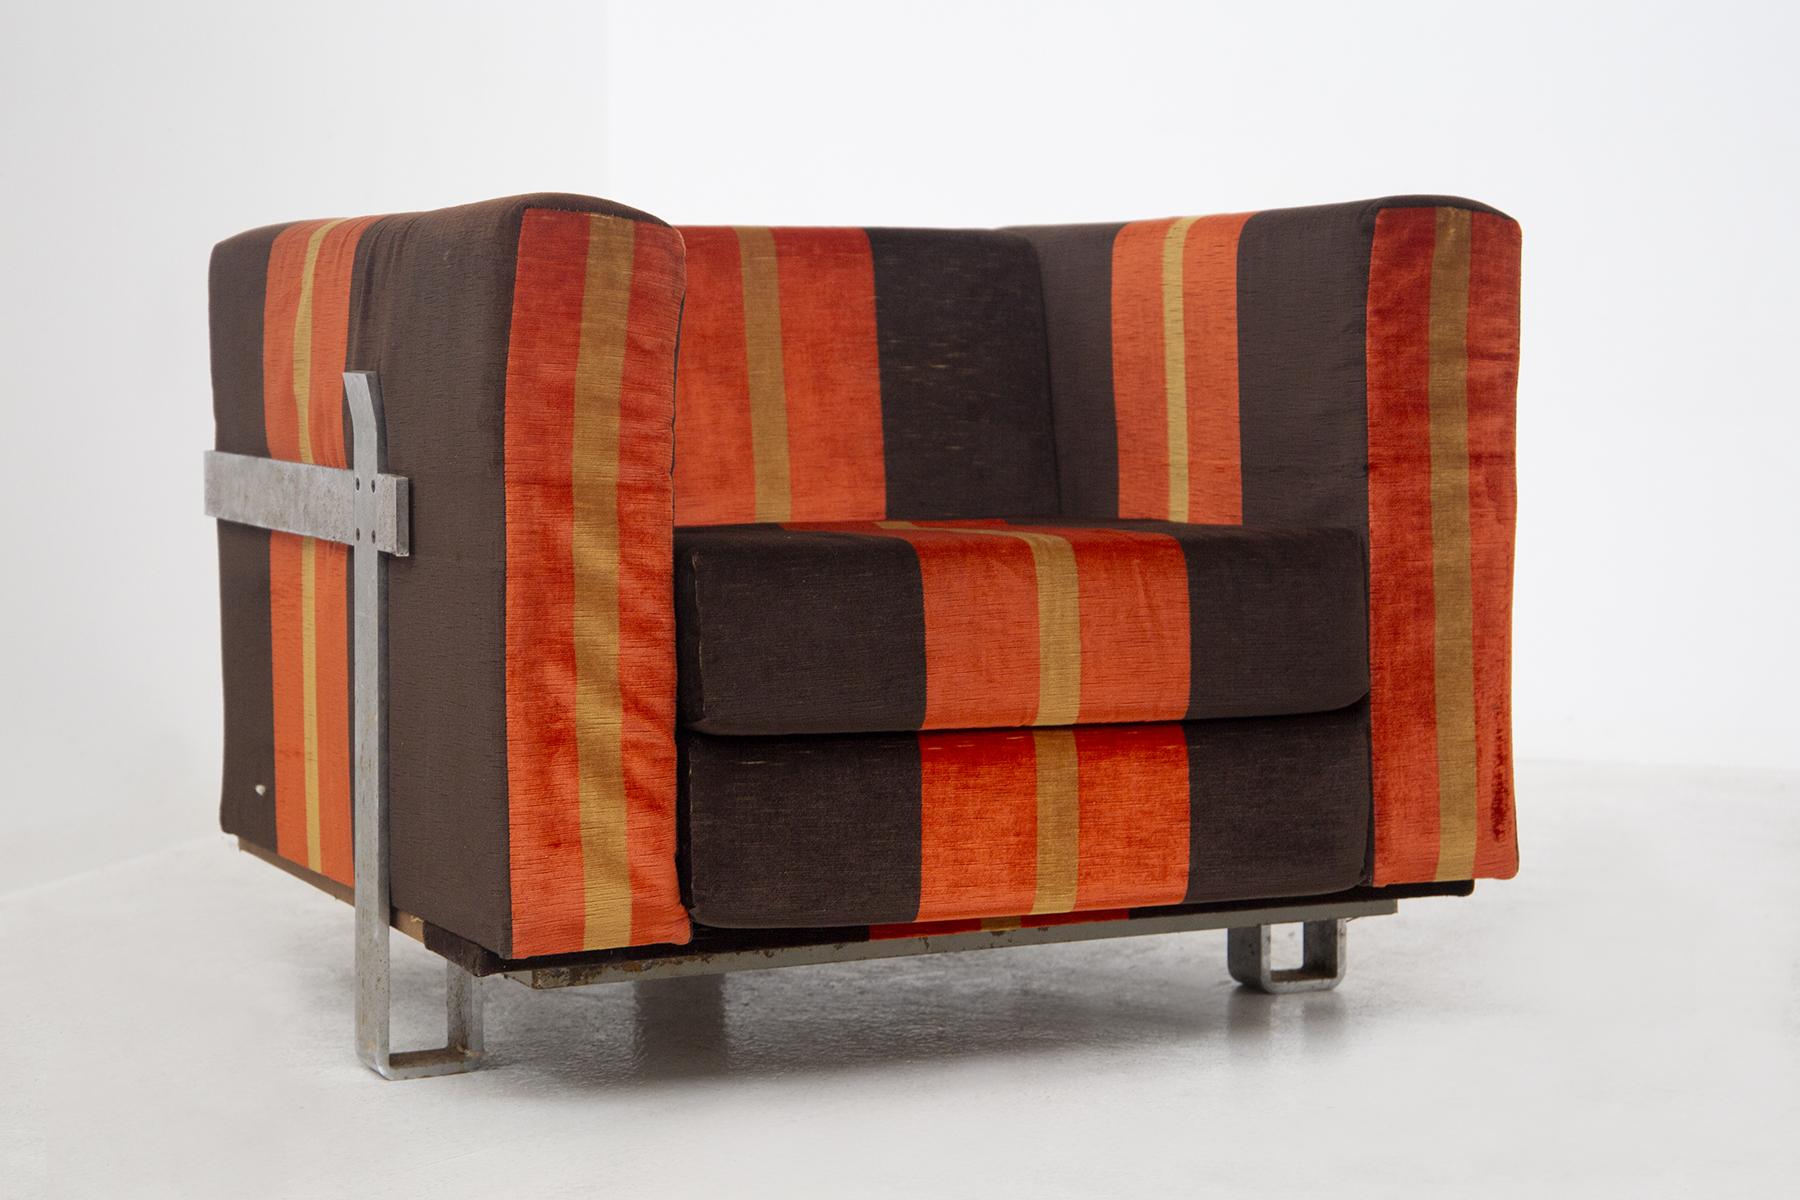 Prächtiges Set aus 2 Stoffsesseln, entworfen von Luigi Caccia Dominioni für die renommierte Manufaktur Azucena Italia.
Die Vintage-Sessel sind aus braunem, orangefarbenem und gelb gestreiftem Stoff gefertigt, der einen sehr farbenfrohen